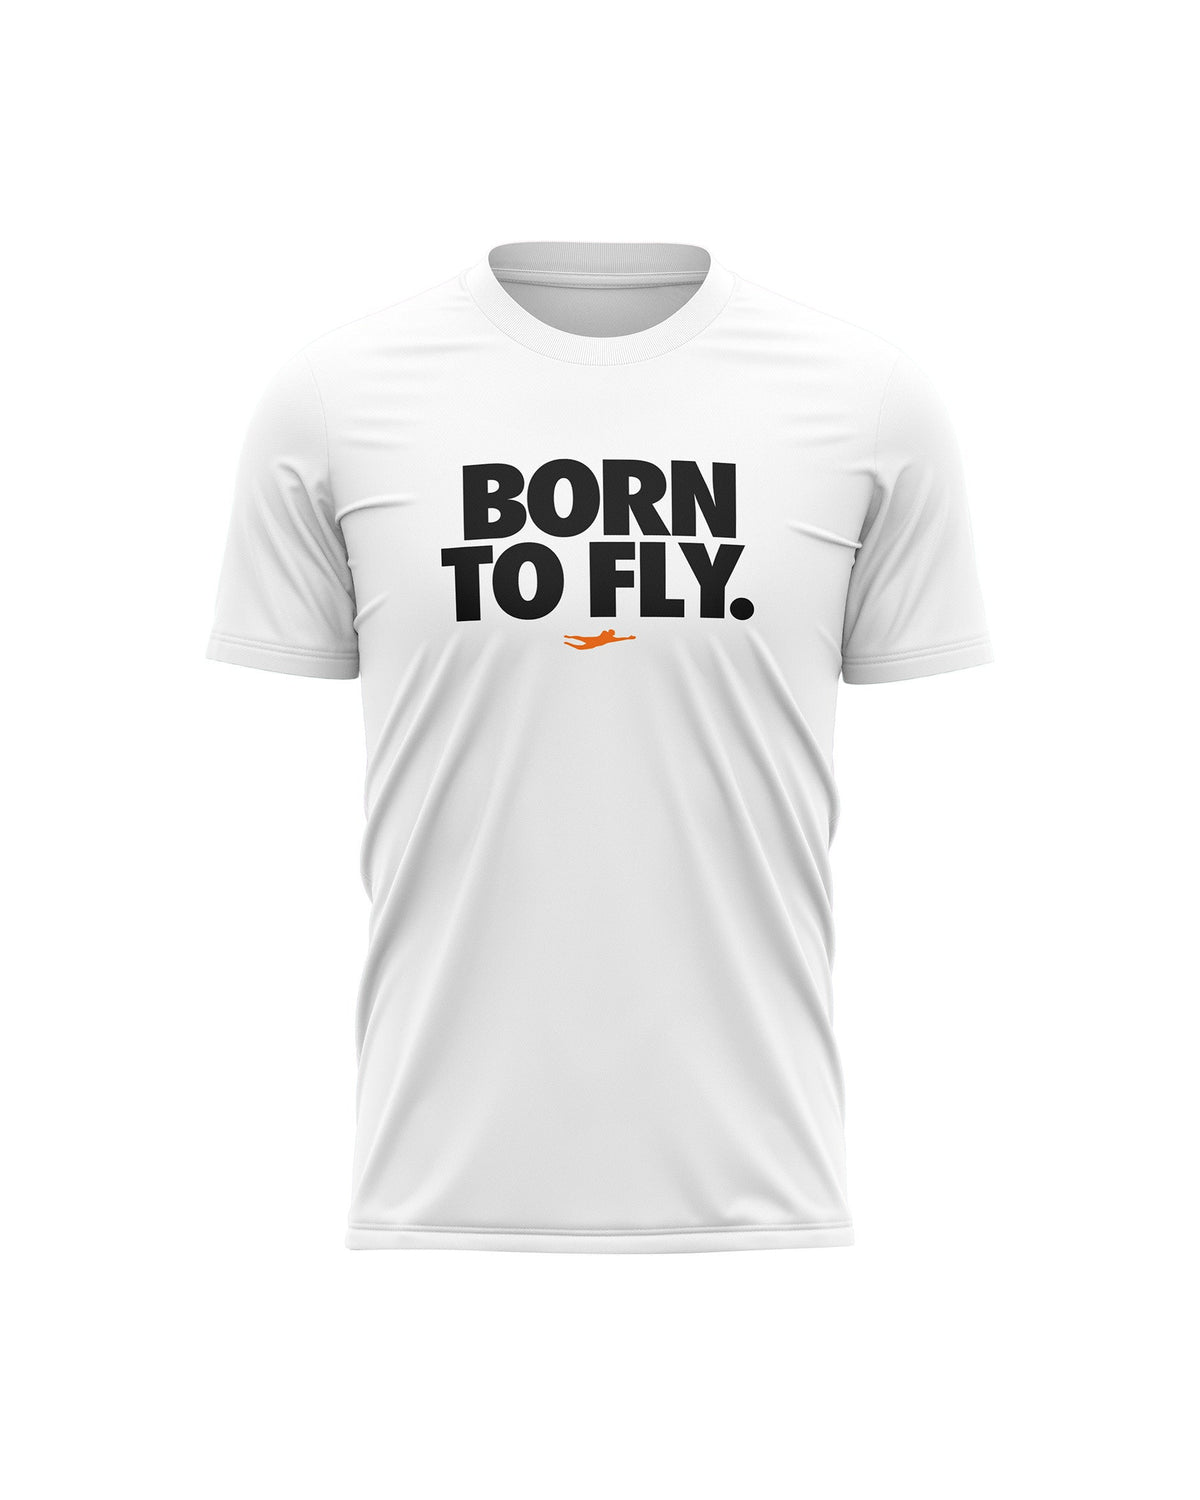 BTF T-Shirt White